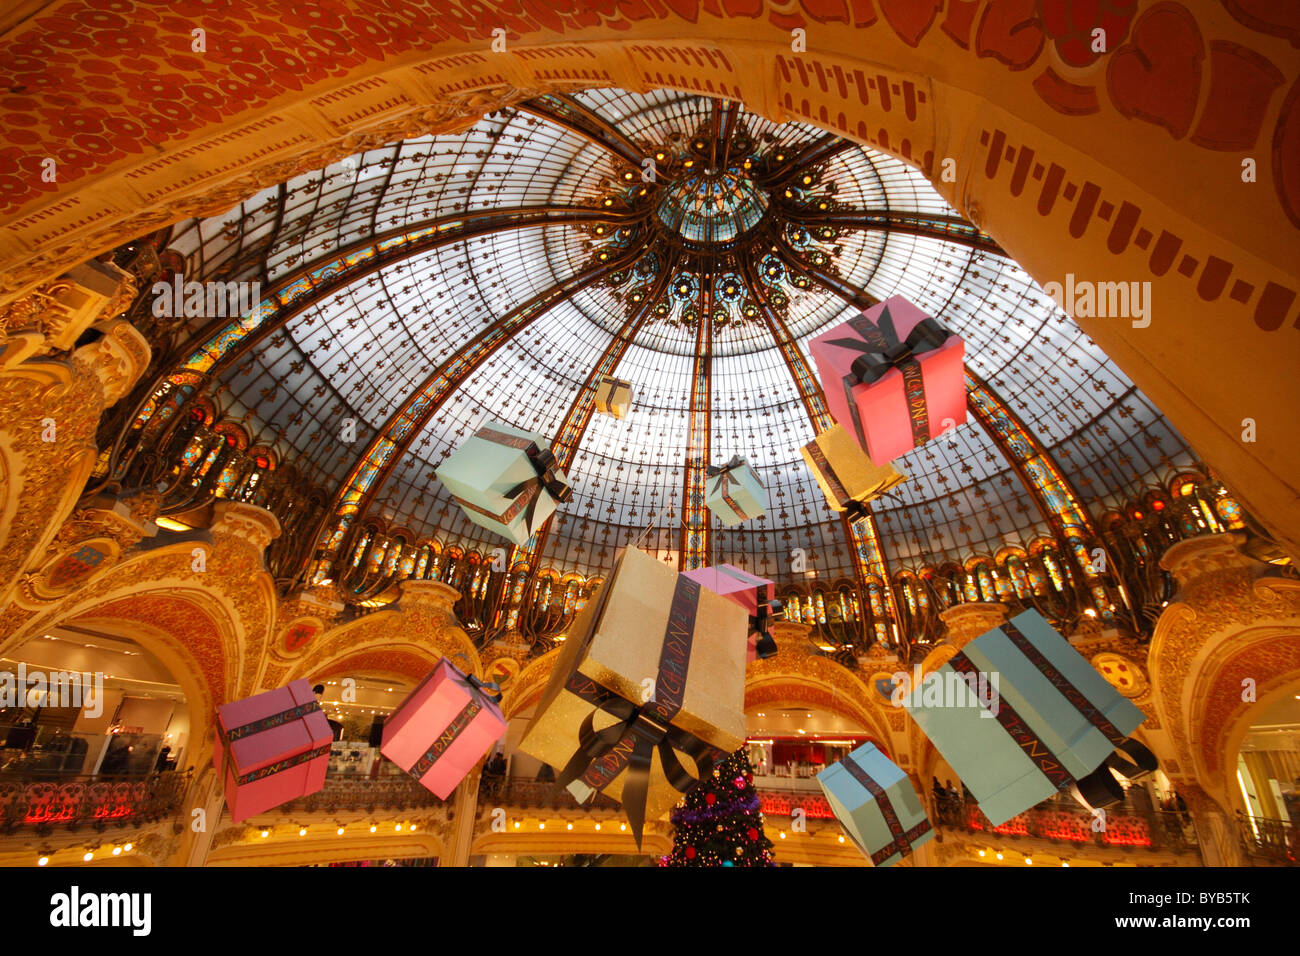 Cúpula de estilo Art Nouveau de la Gran Sala, con grandes paquetes de regalo, Galeries Lafayette, París, Francia, Europa Foto de stock